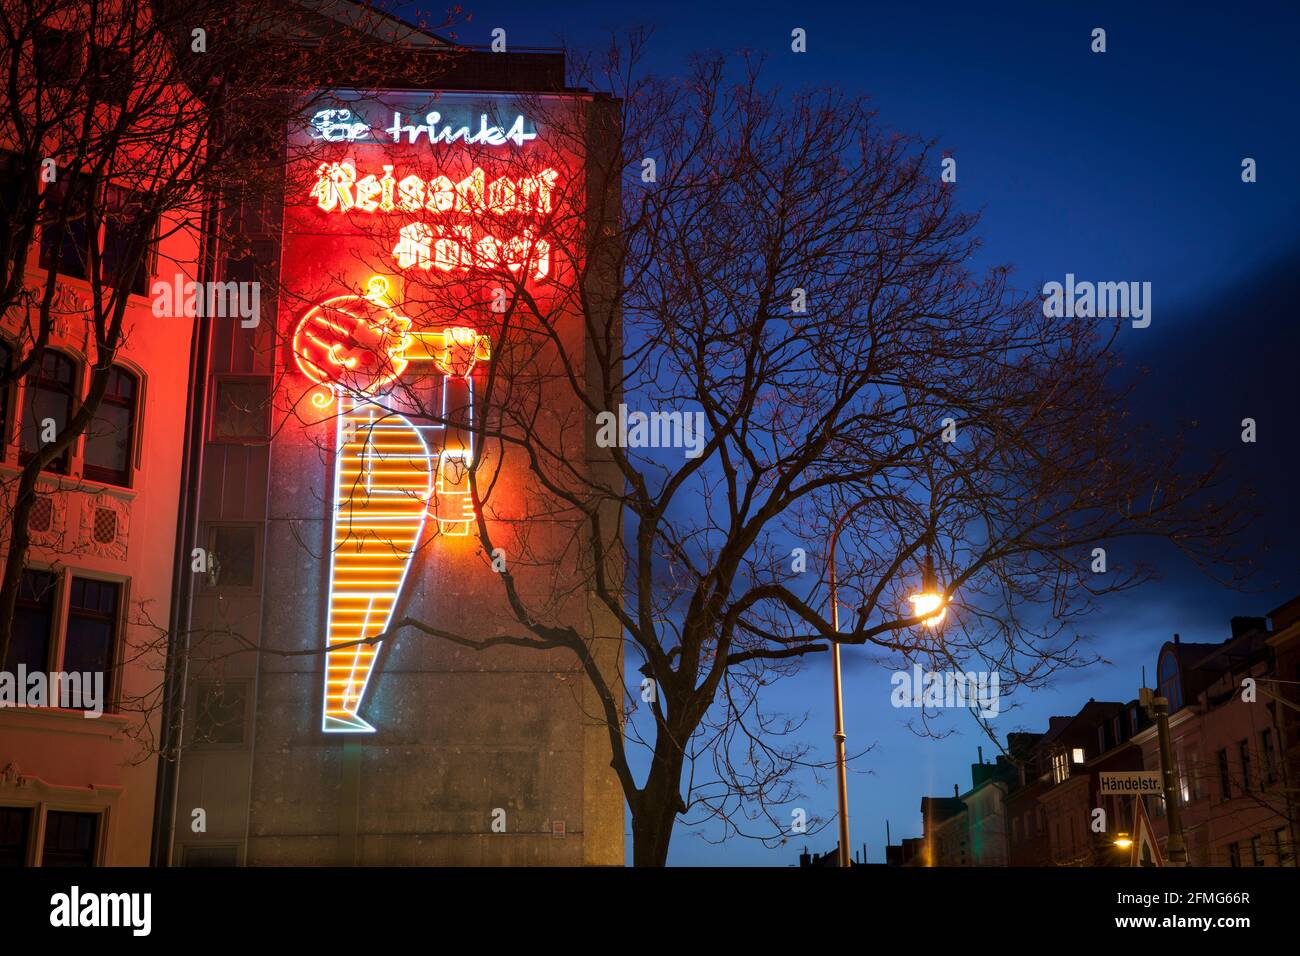 Panneau au néon pour la bière typique de Cologne Reissdorf Koelsch sur la rue Aachener près de la place Rudolfplatz, Cologne, Allemagne. Neonreklame für Reissdorf Koelsch Banque D'Images